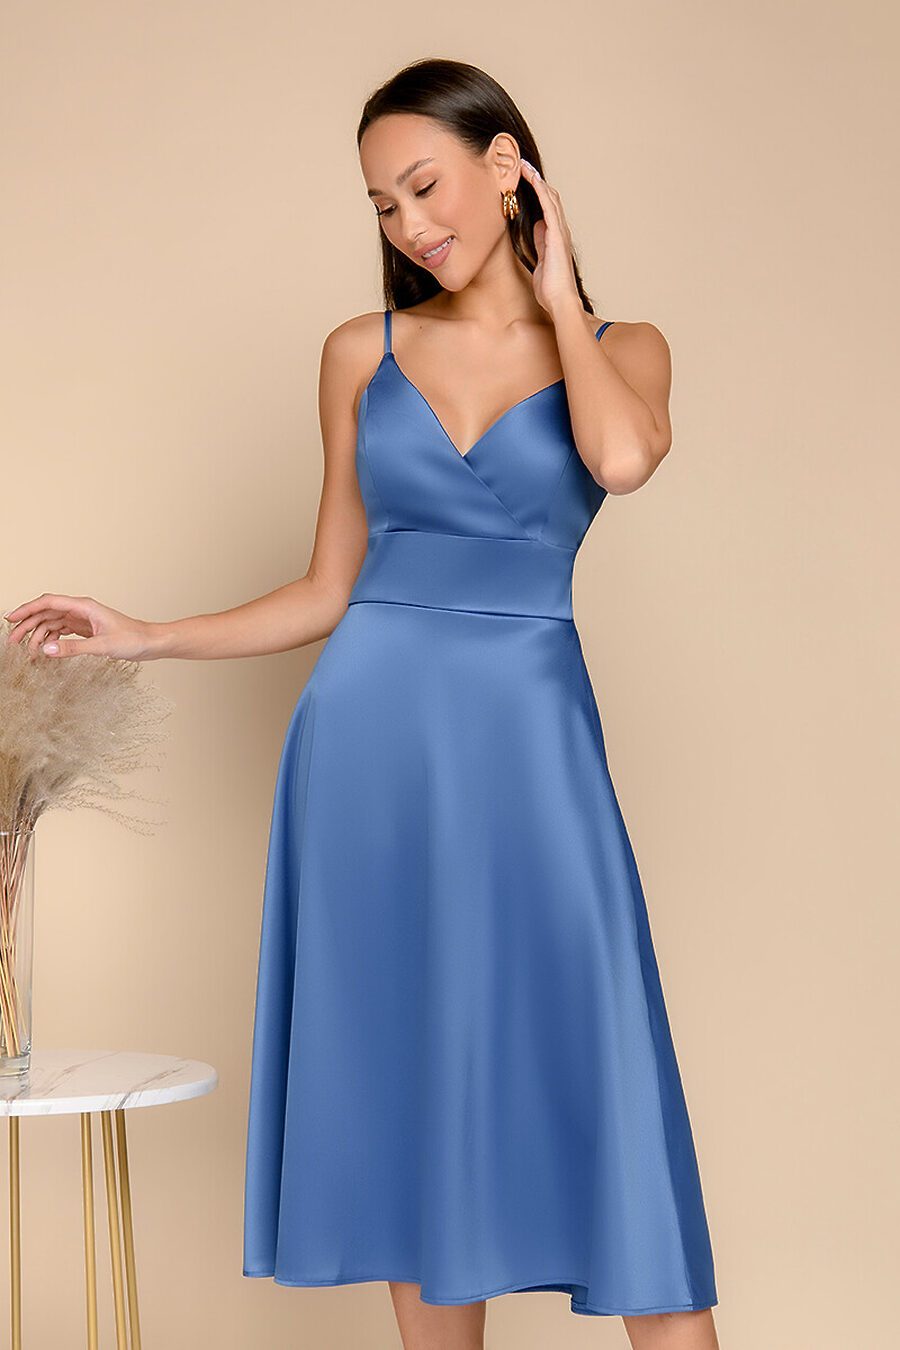 Платье для женщин 1001 DRESS 775882 купить оптом от производителя. Совместная покупка женской одежды в OptMoyo